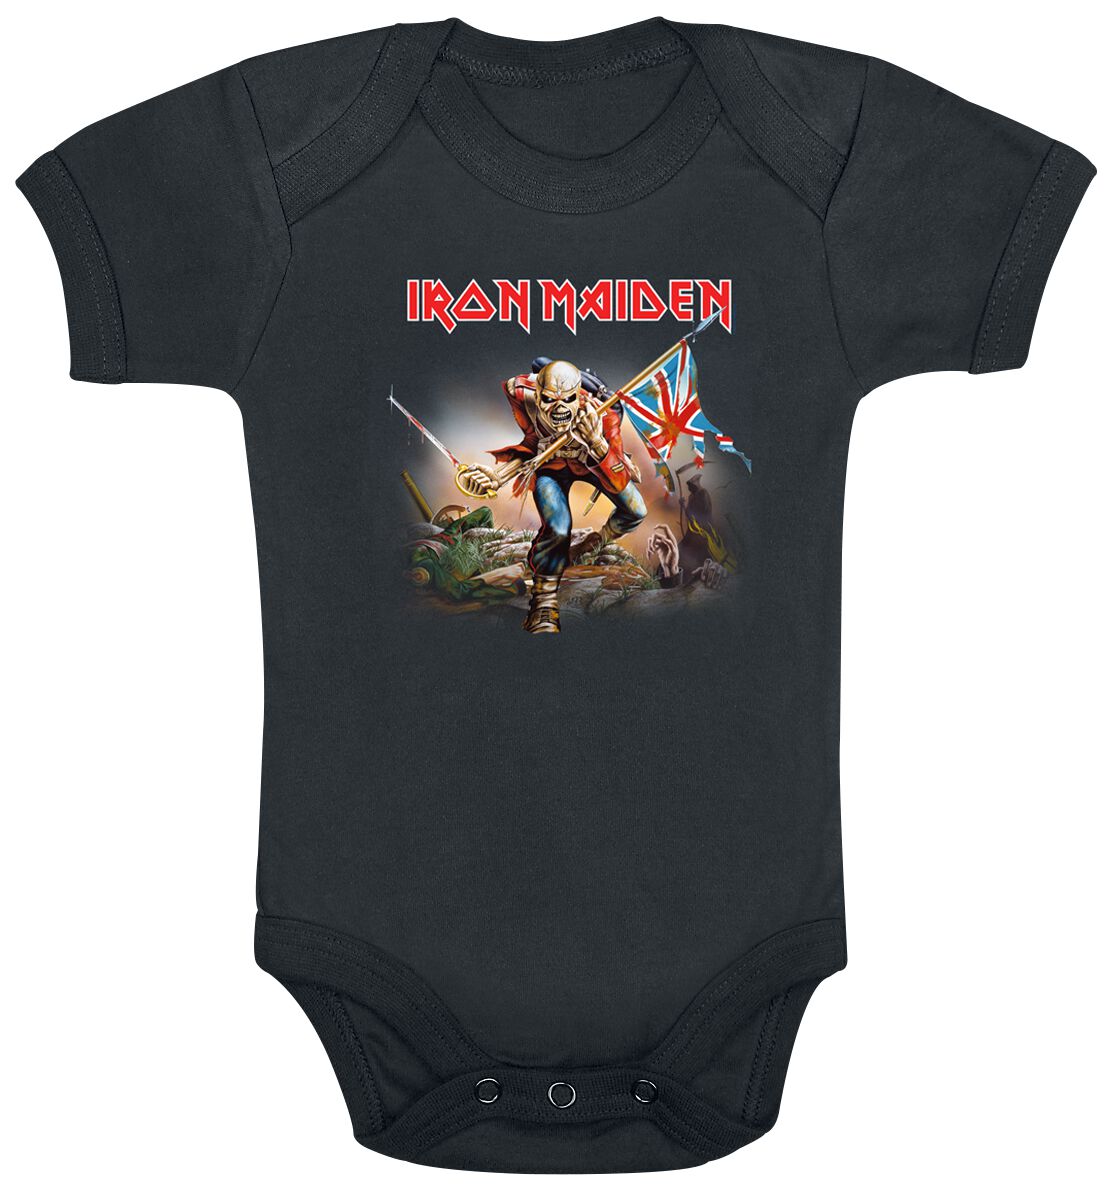 Iron Maiden Body für Babys - Kids - Trooper - für Mädchen & Jungen - schwarz  - Lizenziertes Merchandise!